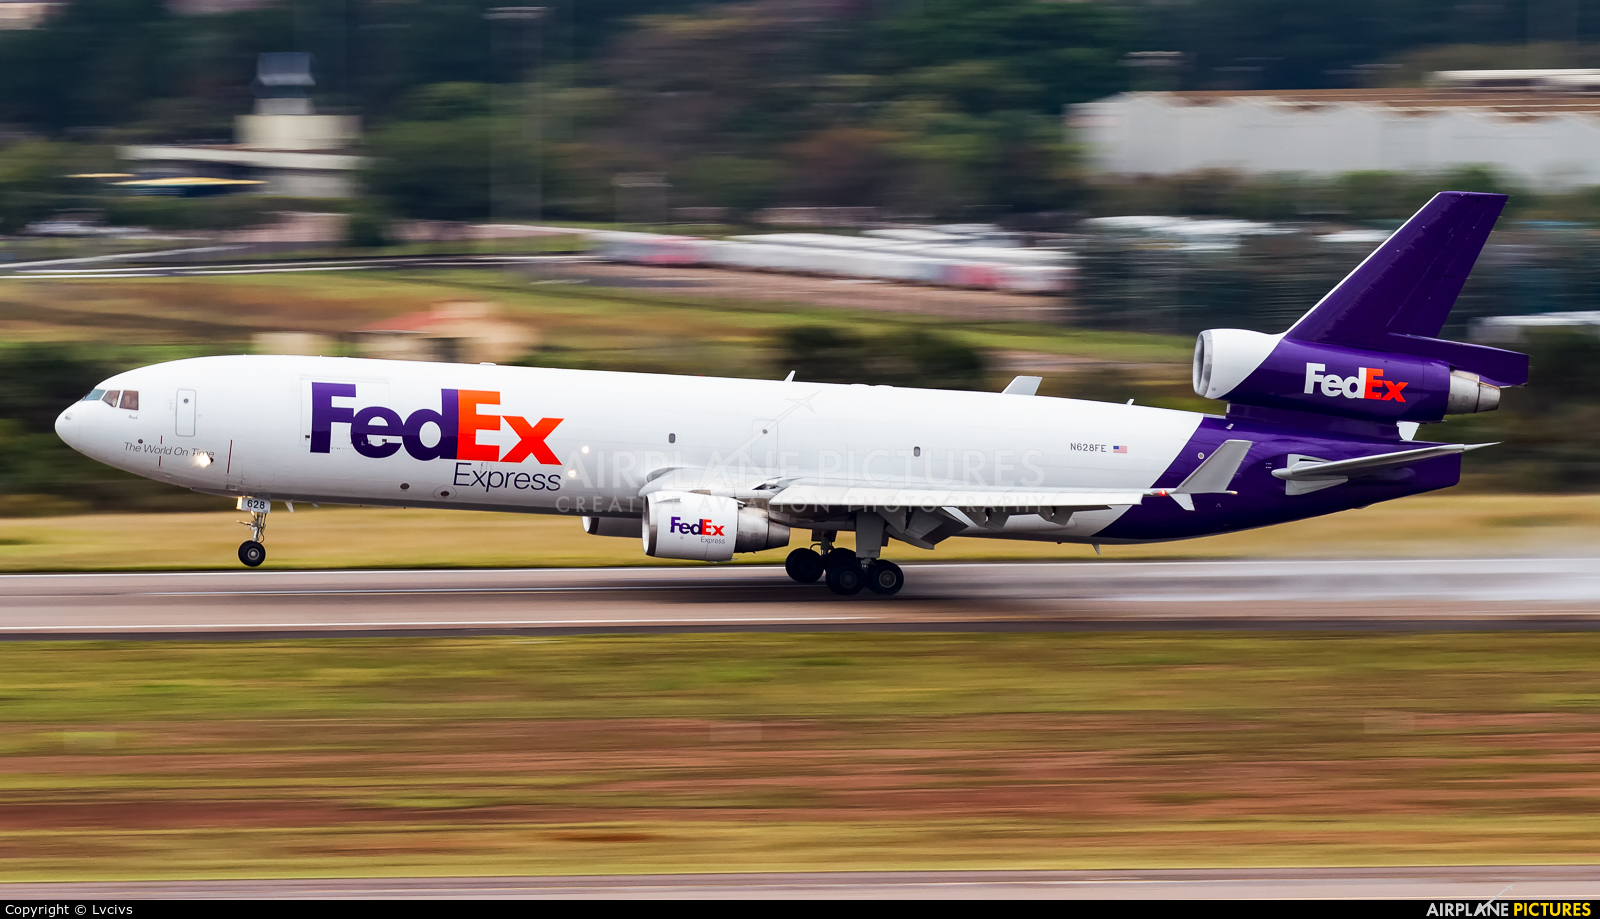 FedEx Federal Express N628FE aircraft at Campinas - Viracopos Intl